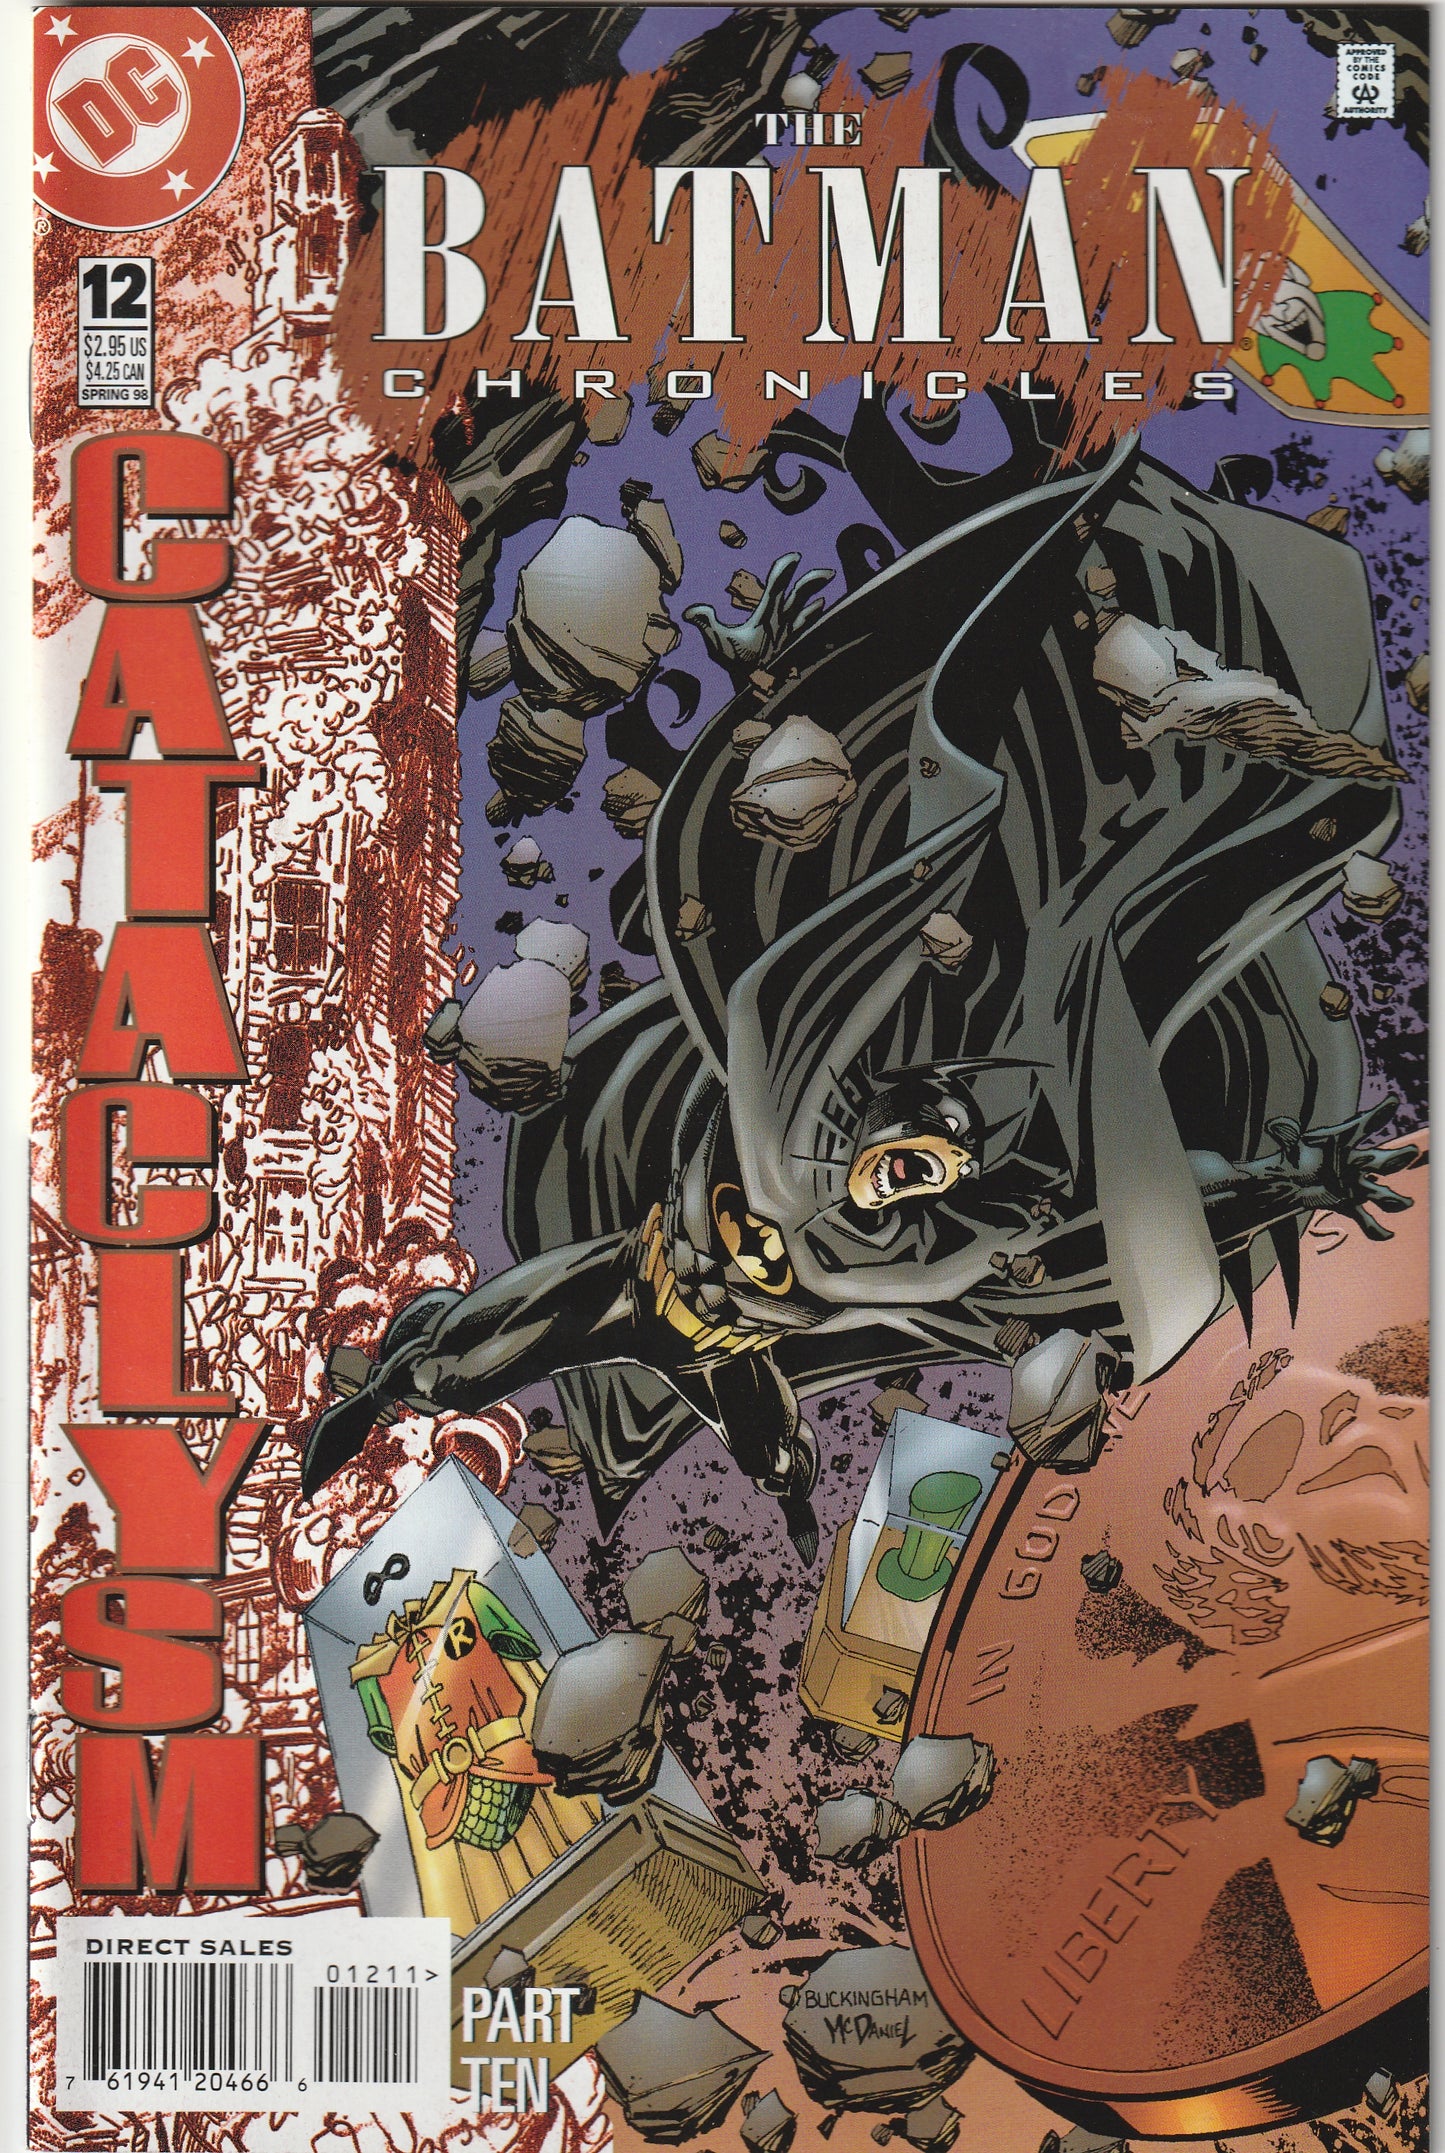 The Batman Chronicles #12 (1998) - Cataclysm Part 10